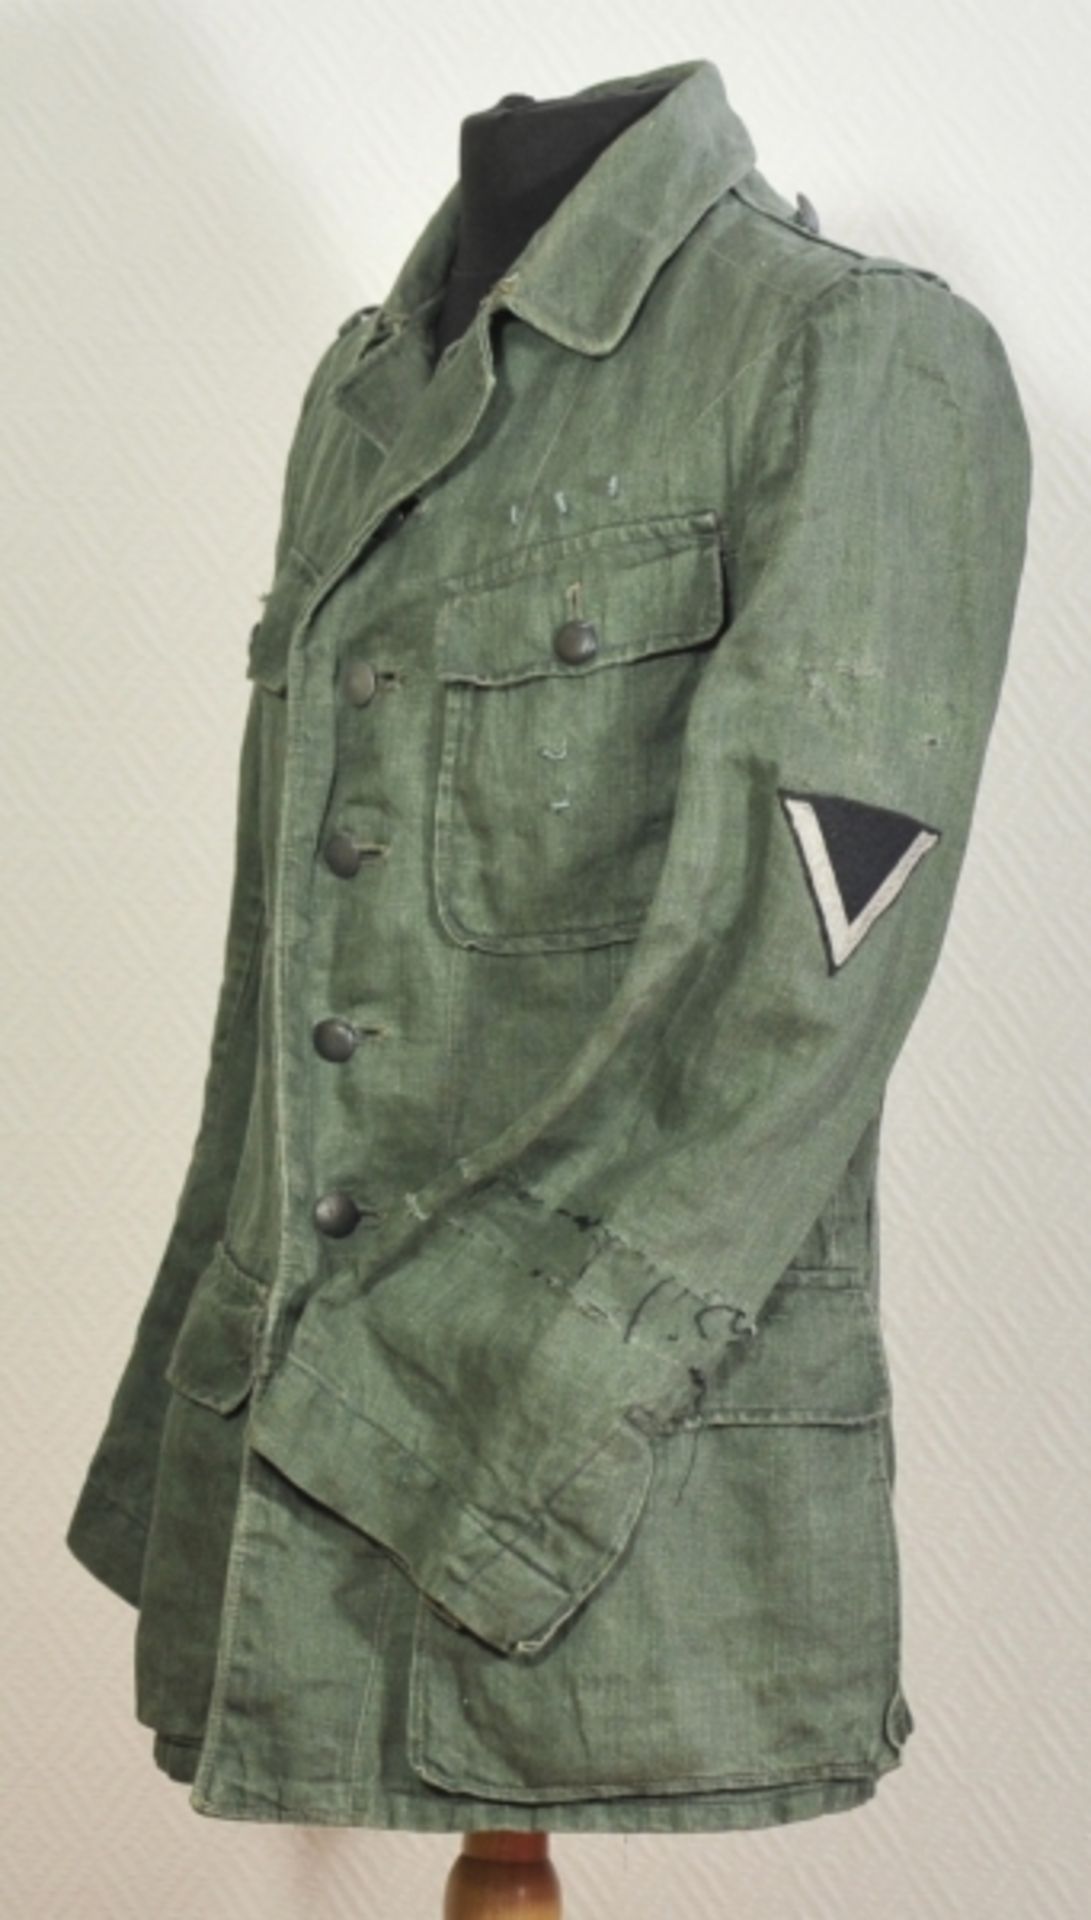 Feldbluse der Wehrmacht.Grünes Tuch, Fischgrätmuster, graue Knöpfe, mit zwei Koppelhaken, die - Image 2 of 5